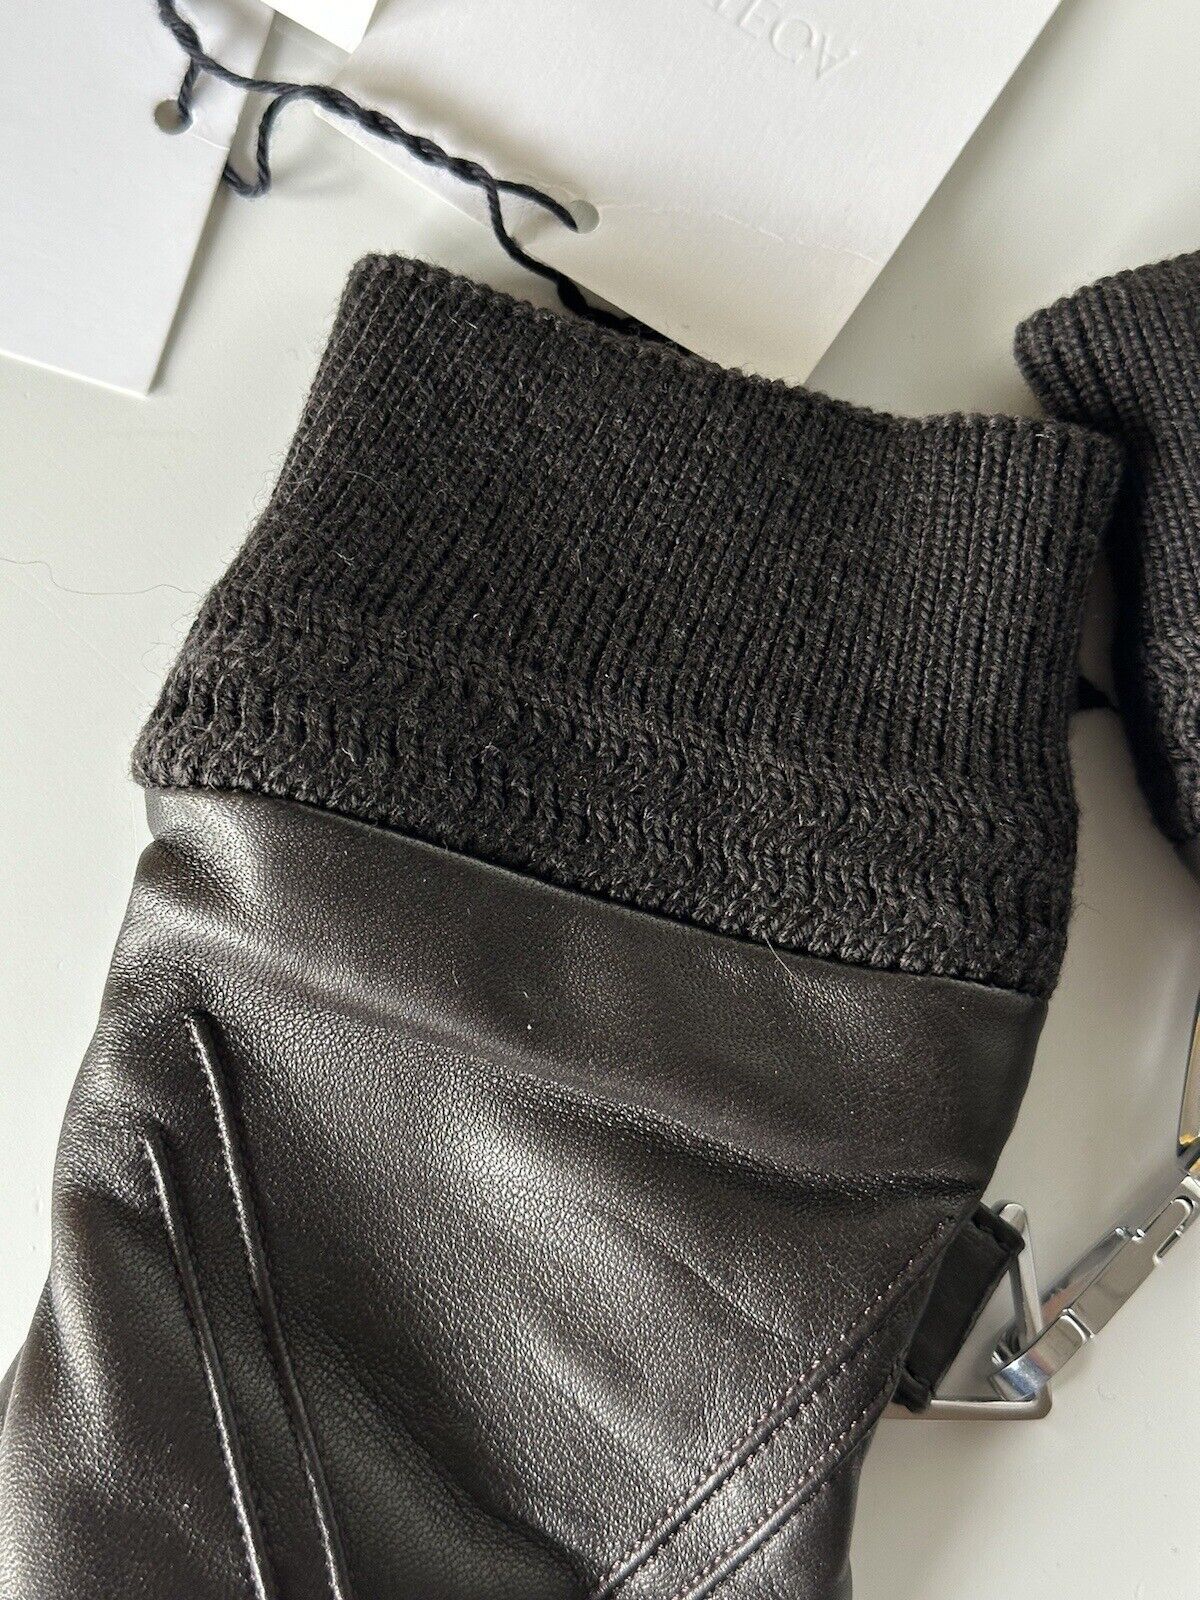 NWT $650 Bottega Veneta Women's Leather Gloves Brown Size 8  (L) Italy 690300